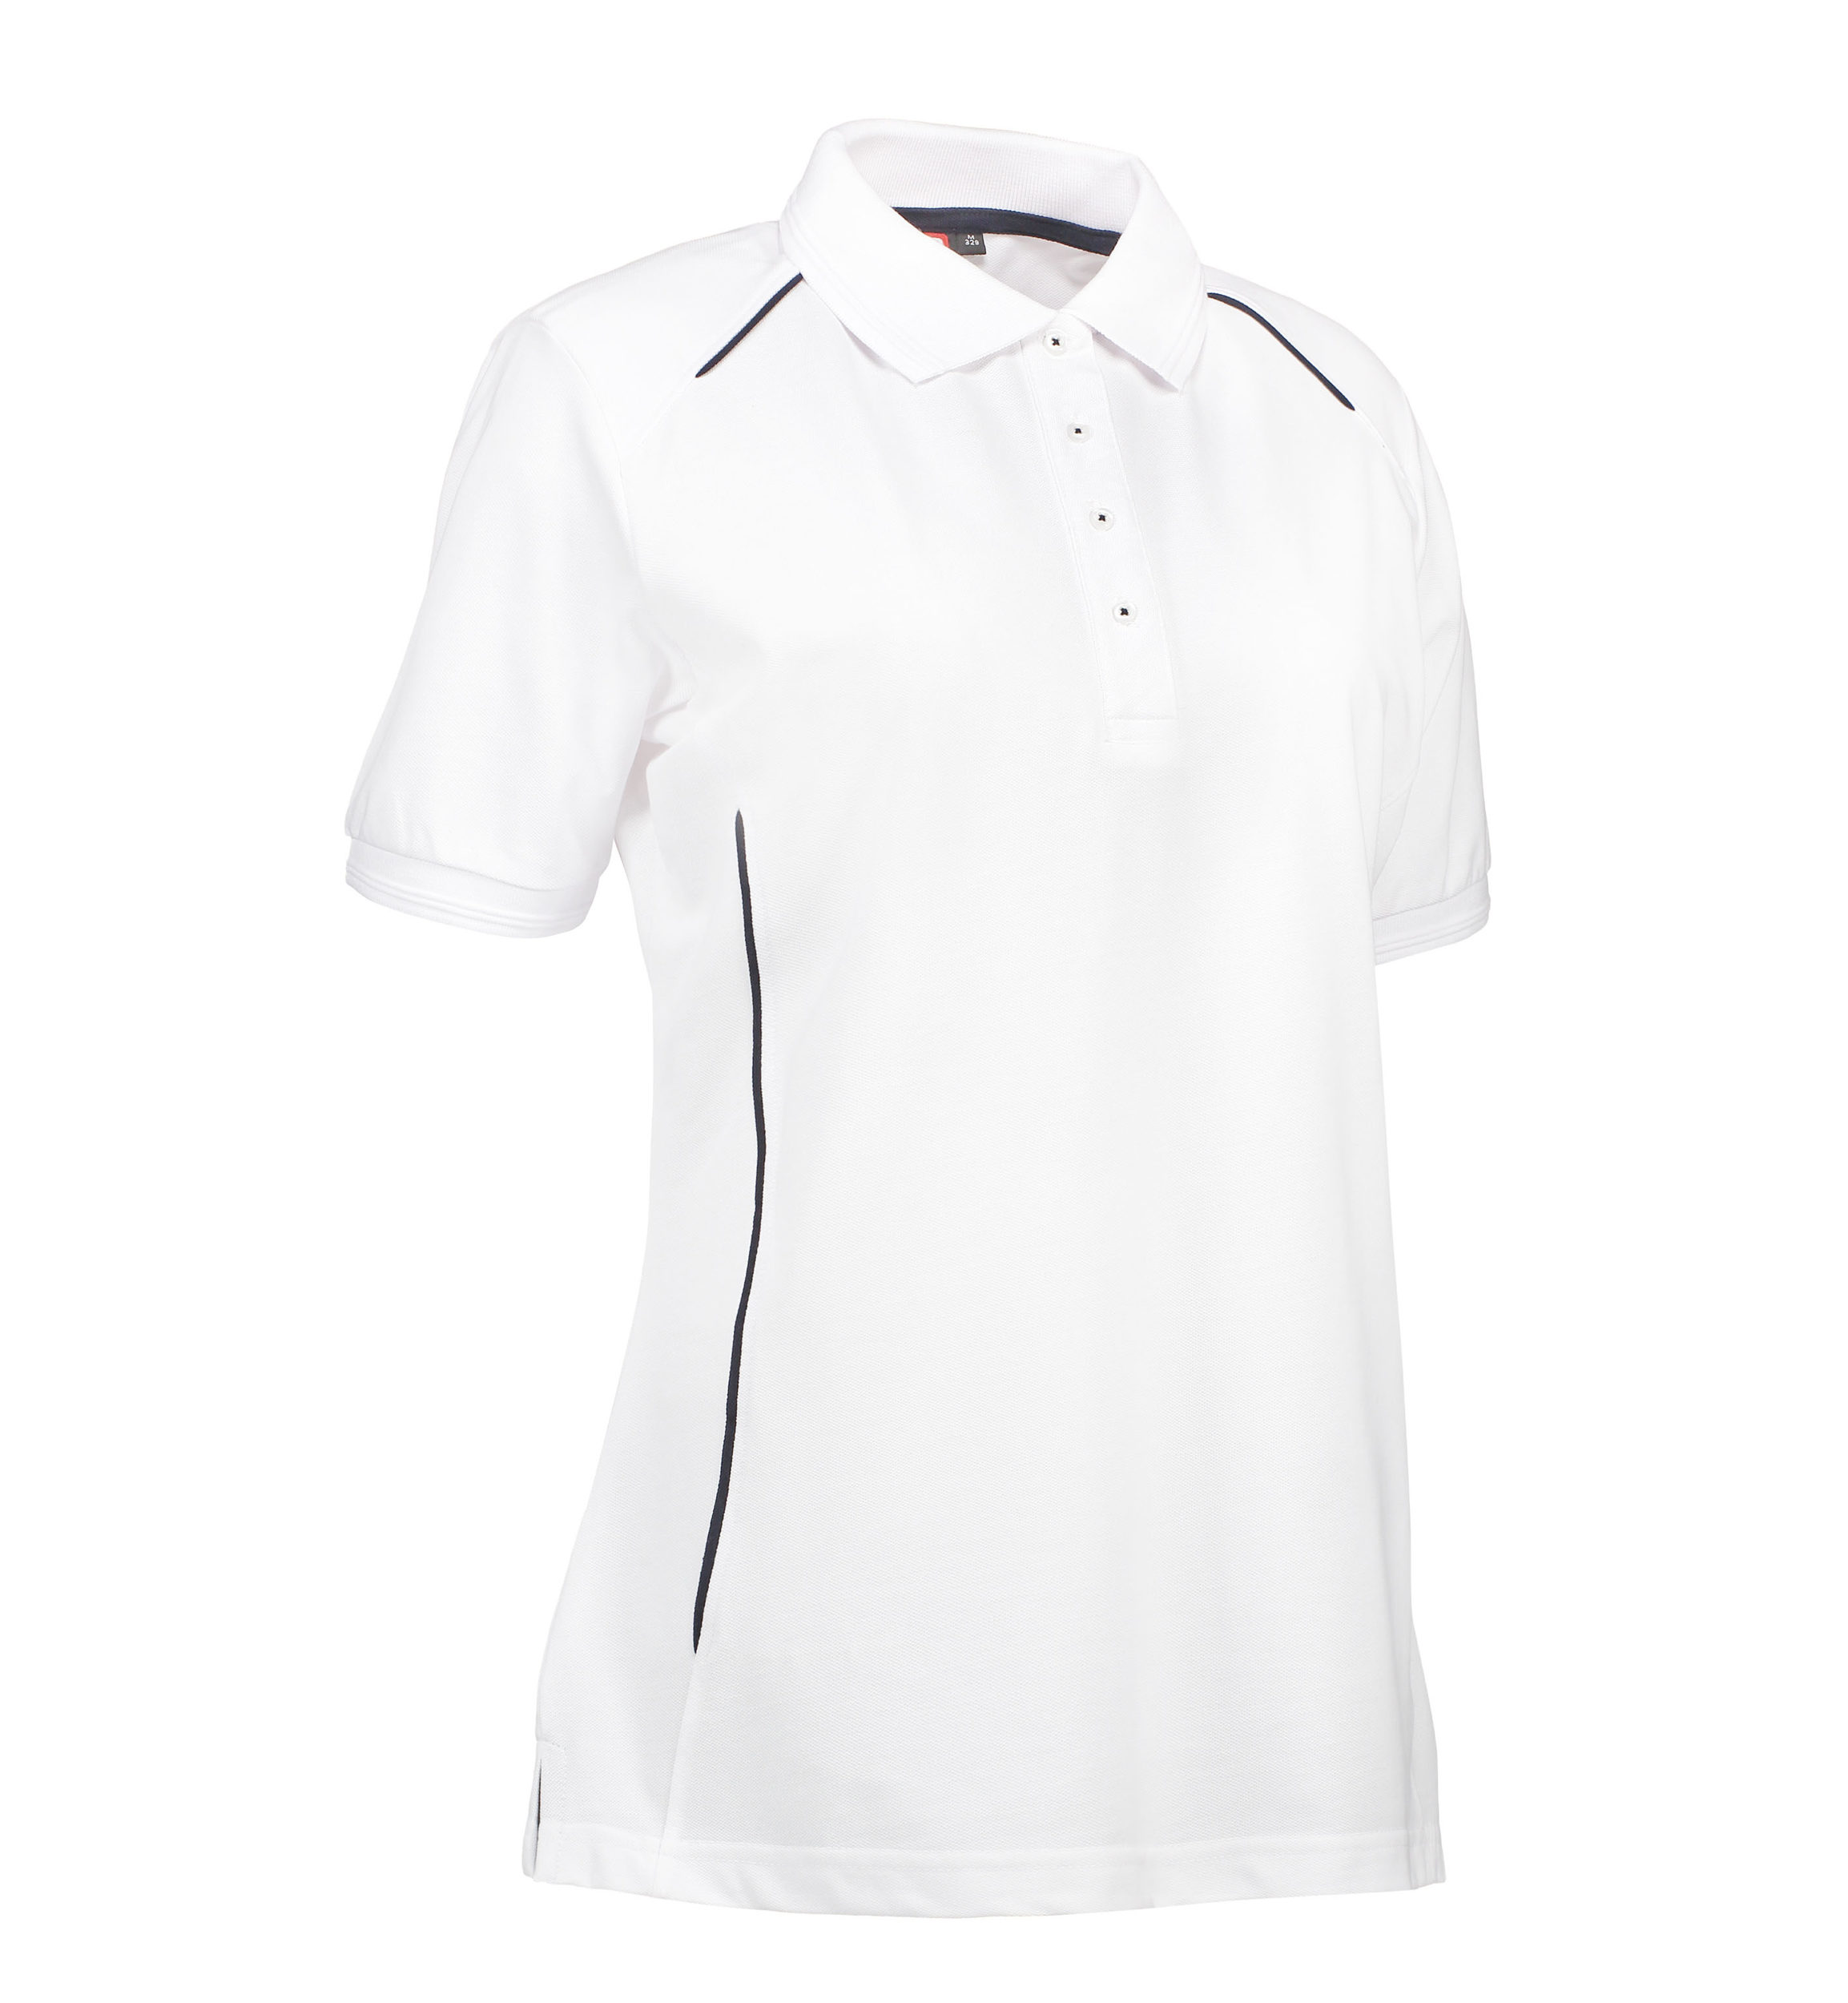 Se Slidstærk polo t-shirt i hvid til damer - 4XL hos Sygeplejebutikken.dk